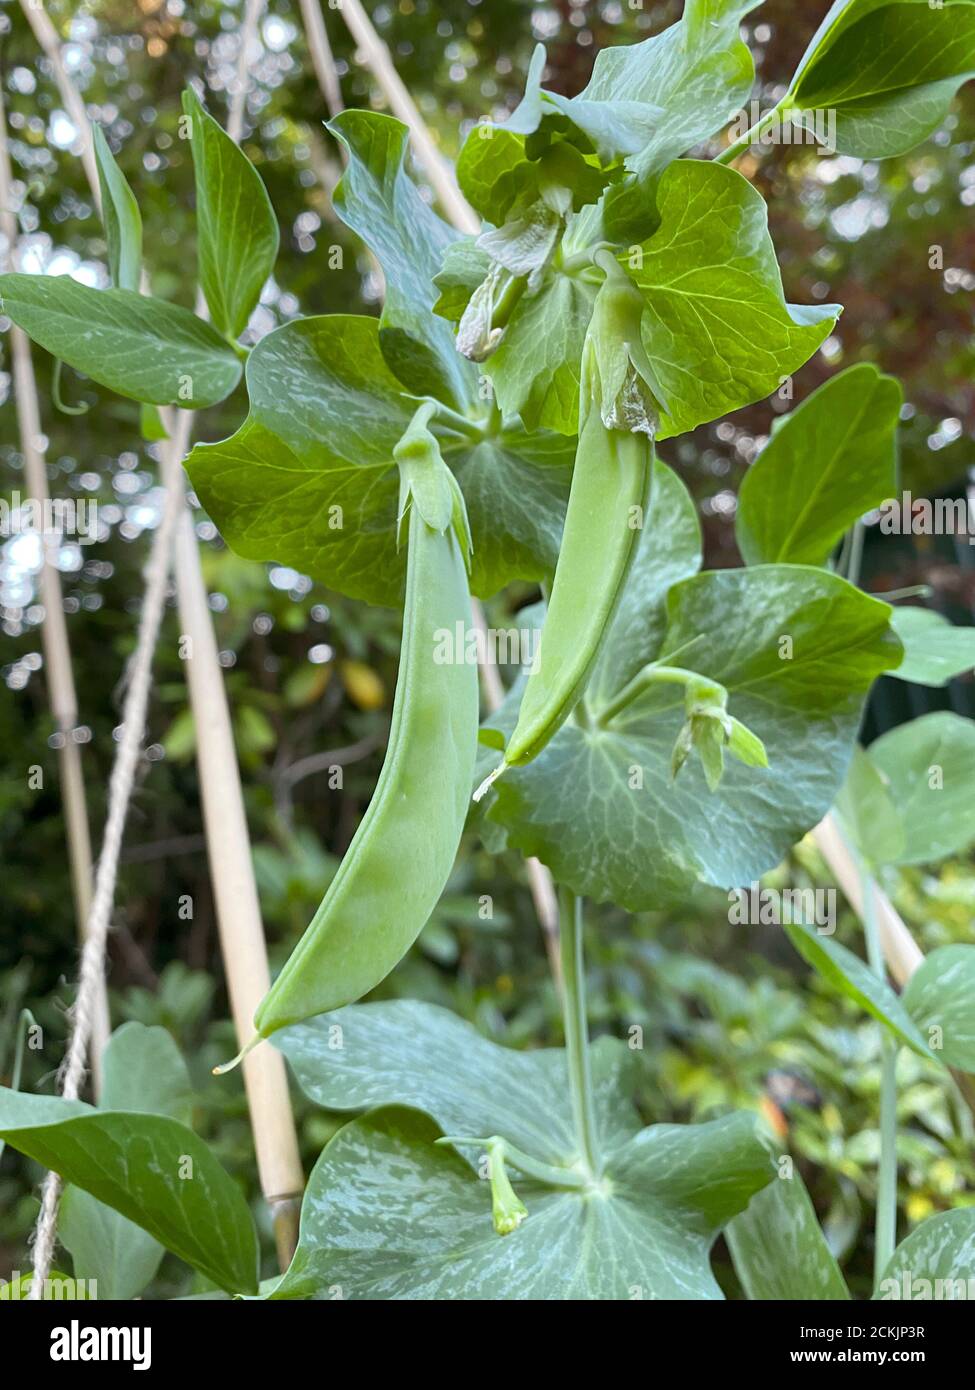 Mangetout, petits pois dans un gousse cultivé et jardin anglais en été. Le légume vert est grandi dans un cadre de bâtons attachés ensemble. Banque D'Images